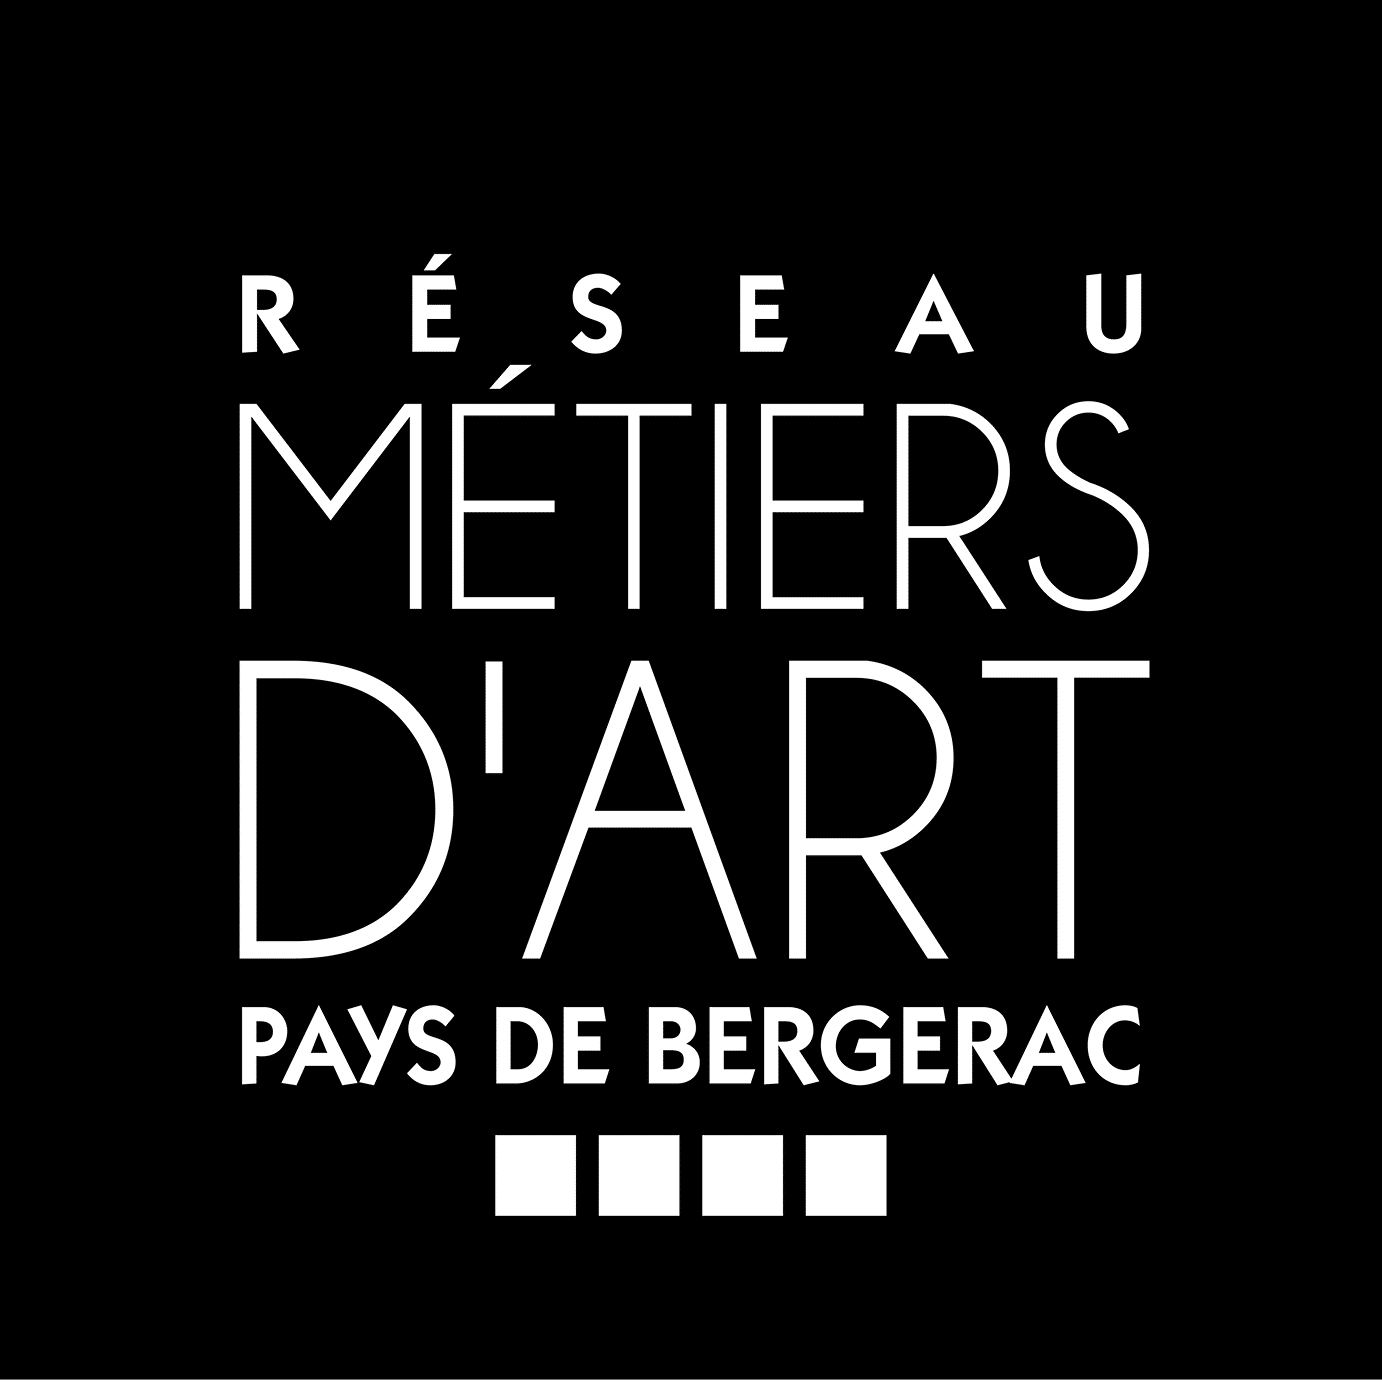 Best of Bergerac Agenda Monpazier Salon des Métiers d'Art Réseau des Métiers D'Art Pays de Bergerac